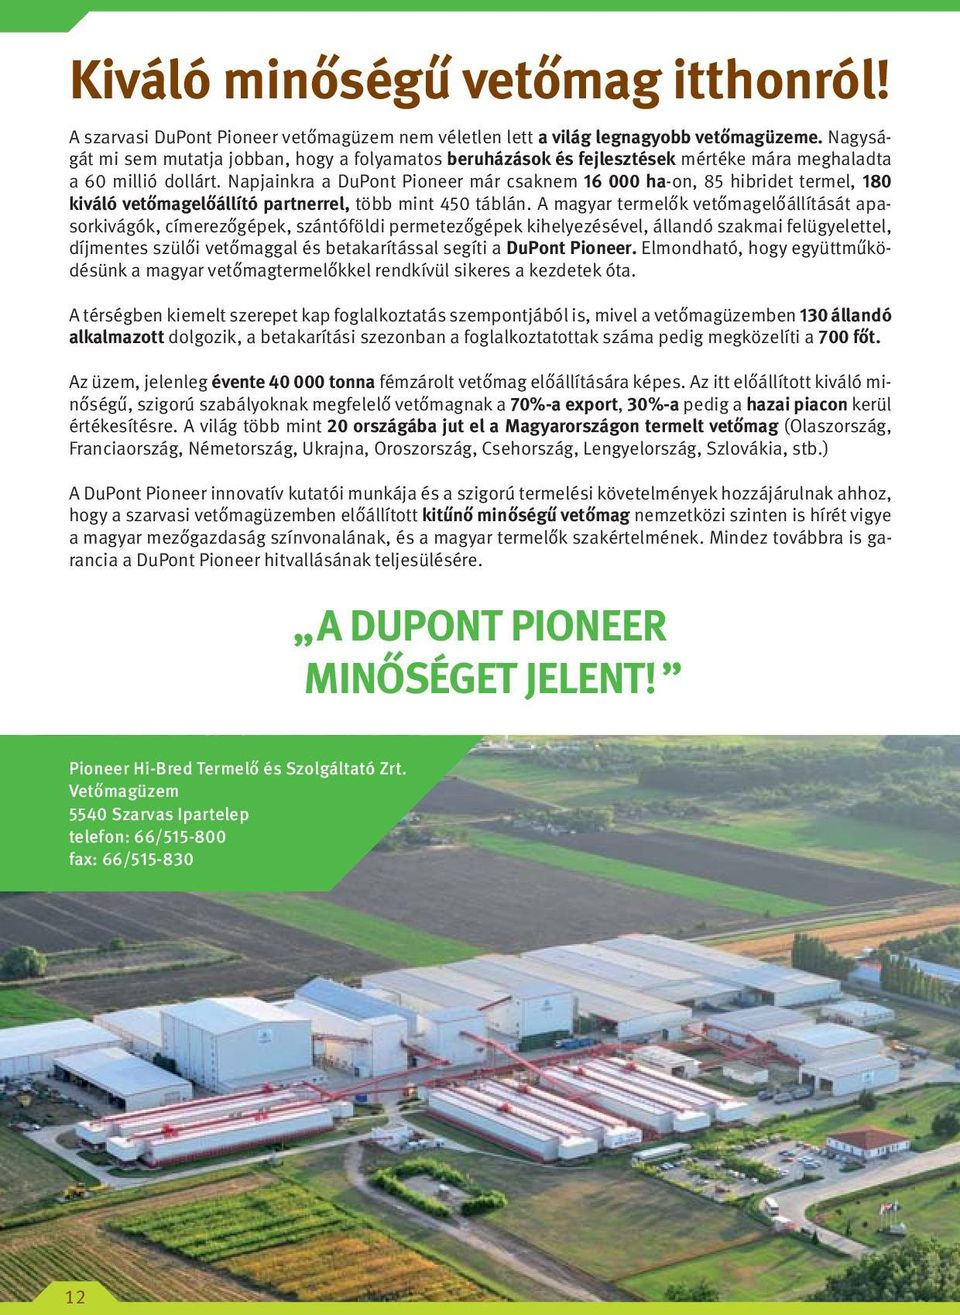 Napjainkra a DuPont Pioneer már csaknem 16 000 ha-on, 85 hibridet termel, 180 kiváló vetőmagelőállító partnerrel, több mint 450 táblán.